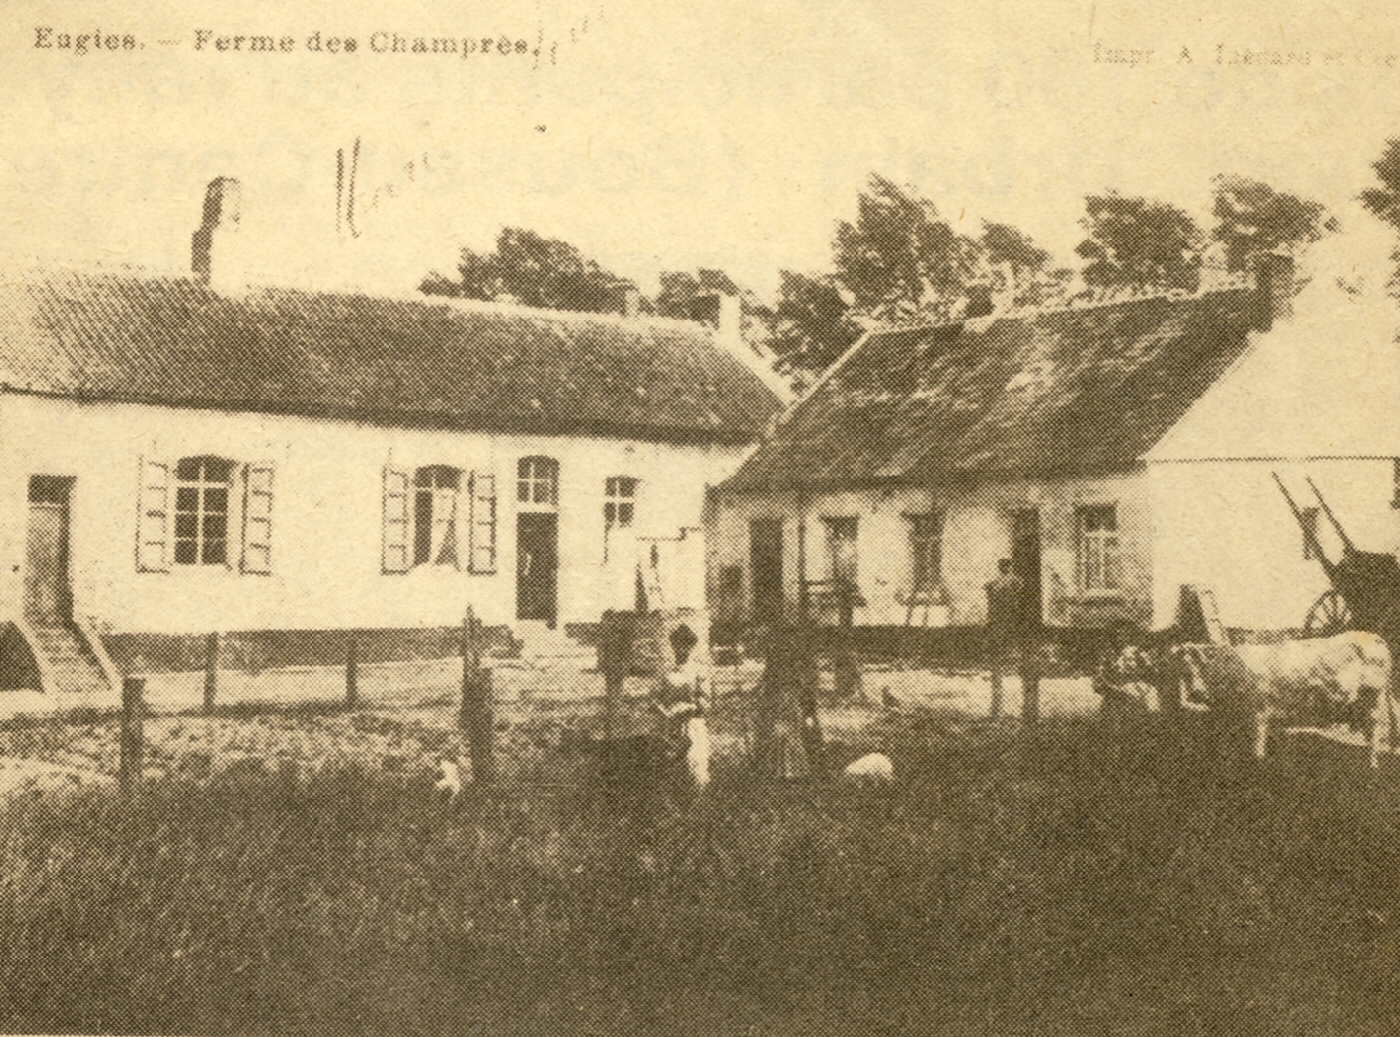 Eugies : La ferme des Champrès, une ferme qui porte le nom de l'ancienne seigneurie où elle fut bâtie.